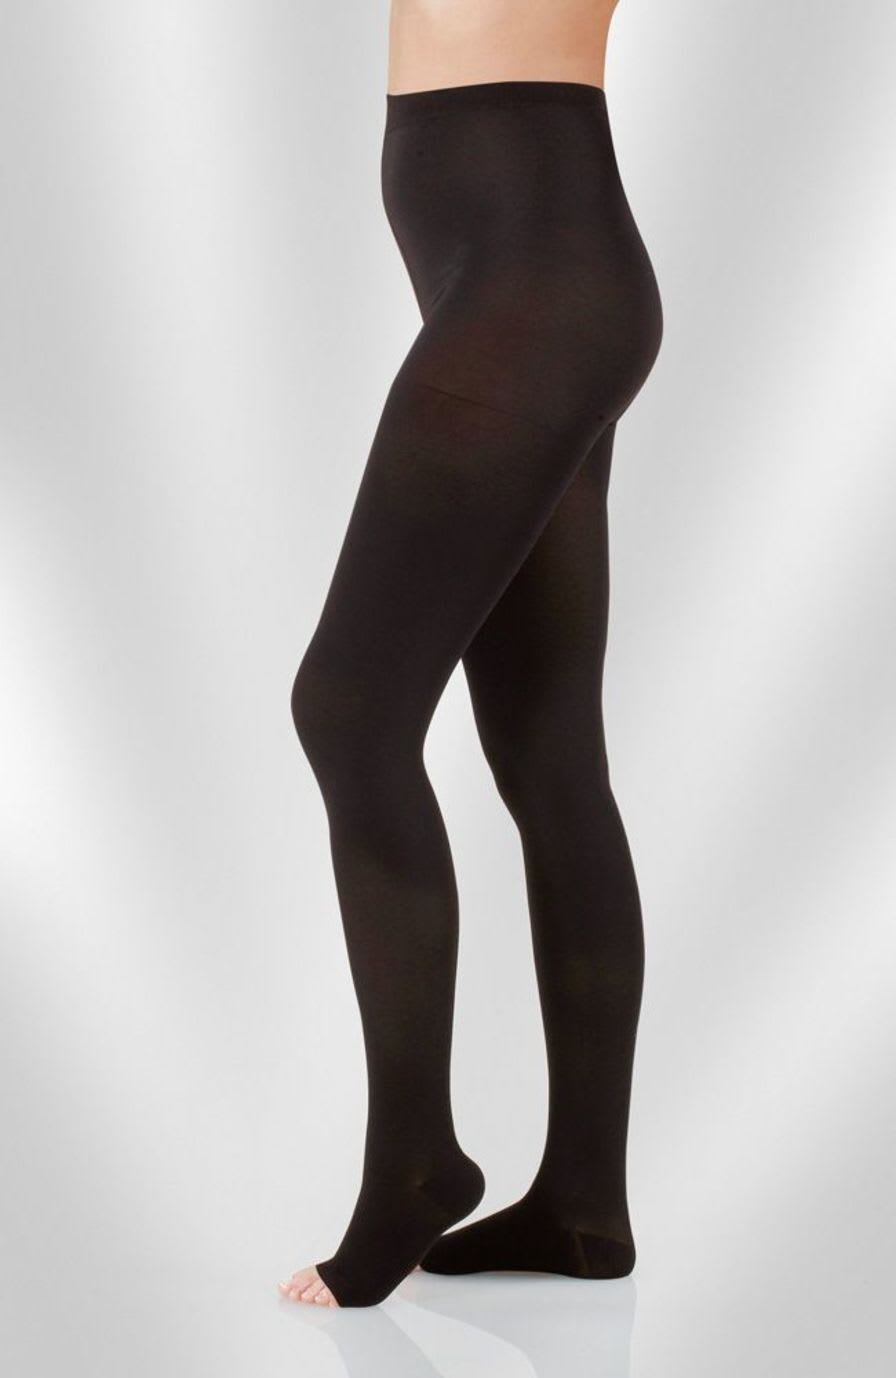 Pantyhose (orthopedic clothing) / compression / woman Juzo® Dynamic Juzo